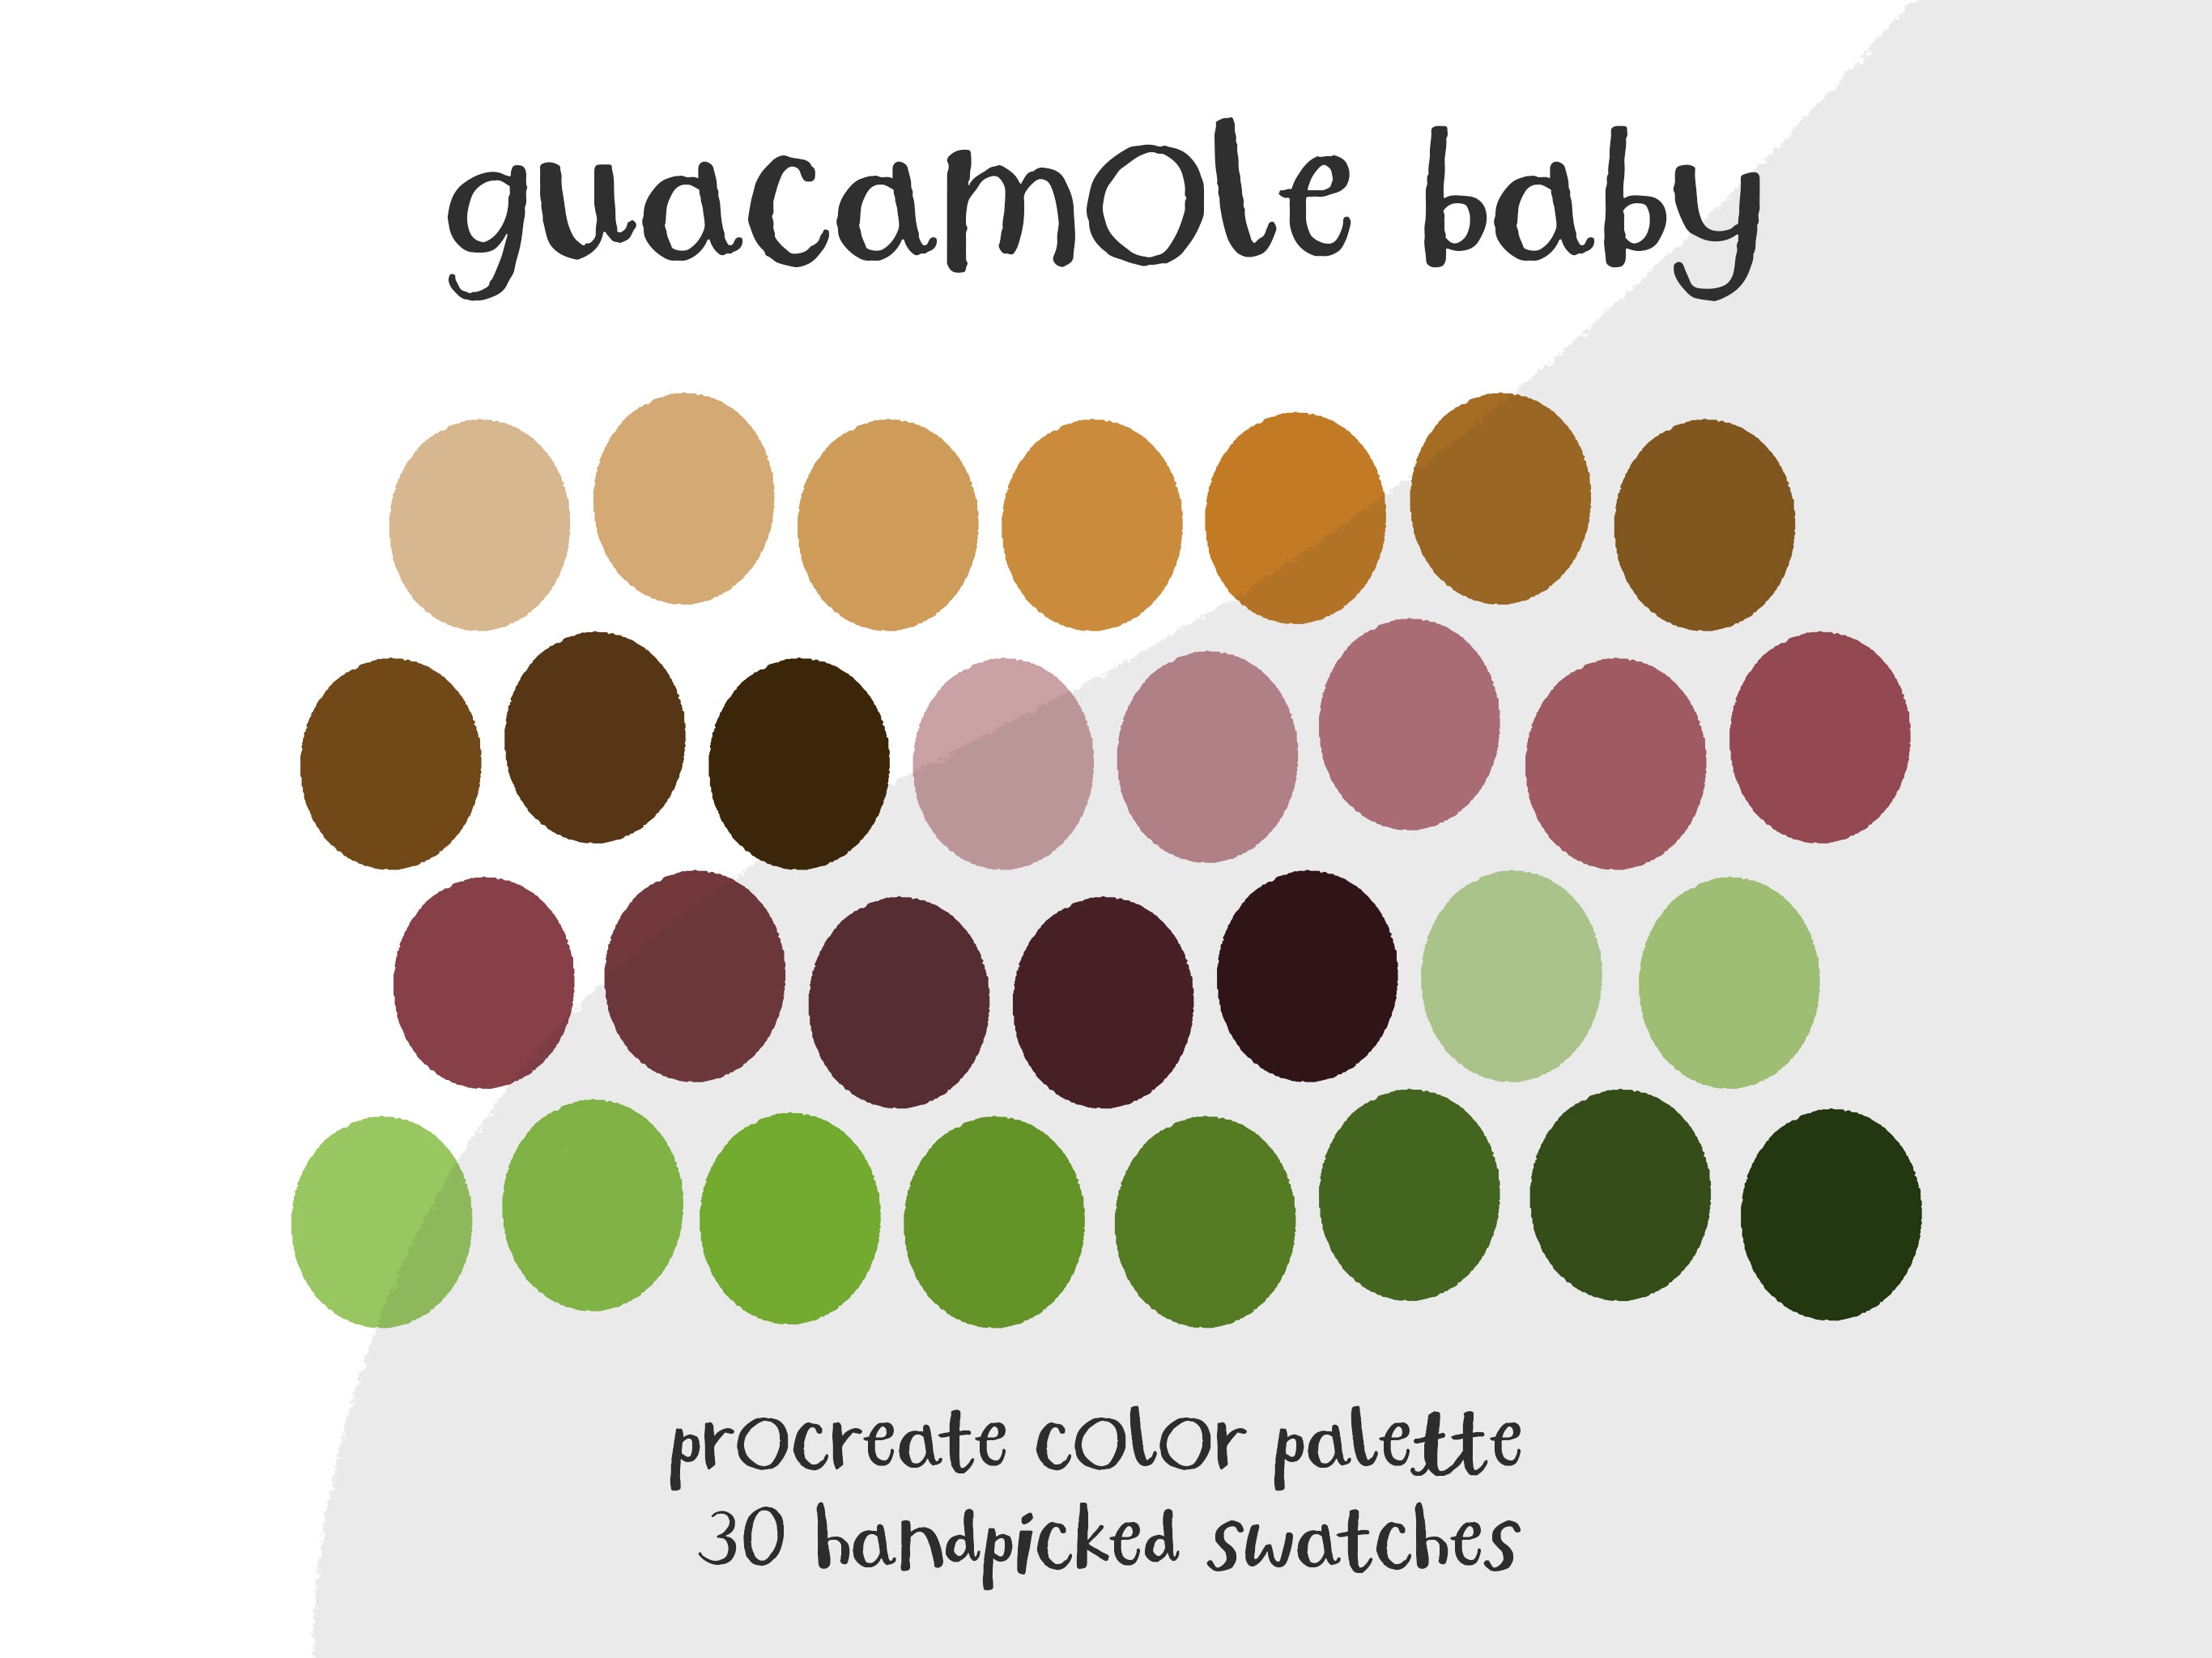 Guacamole Baby